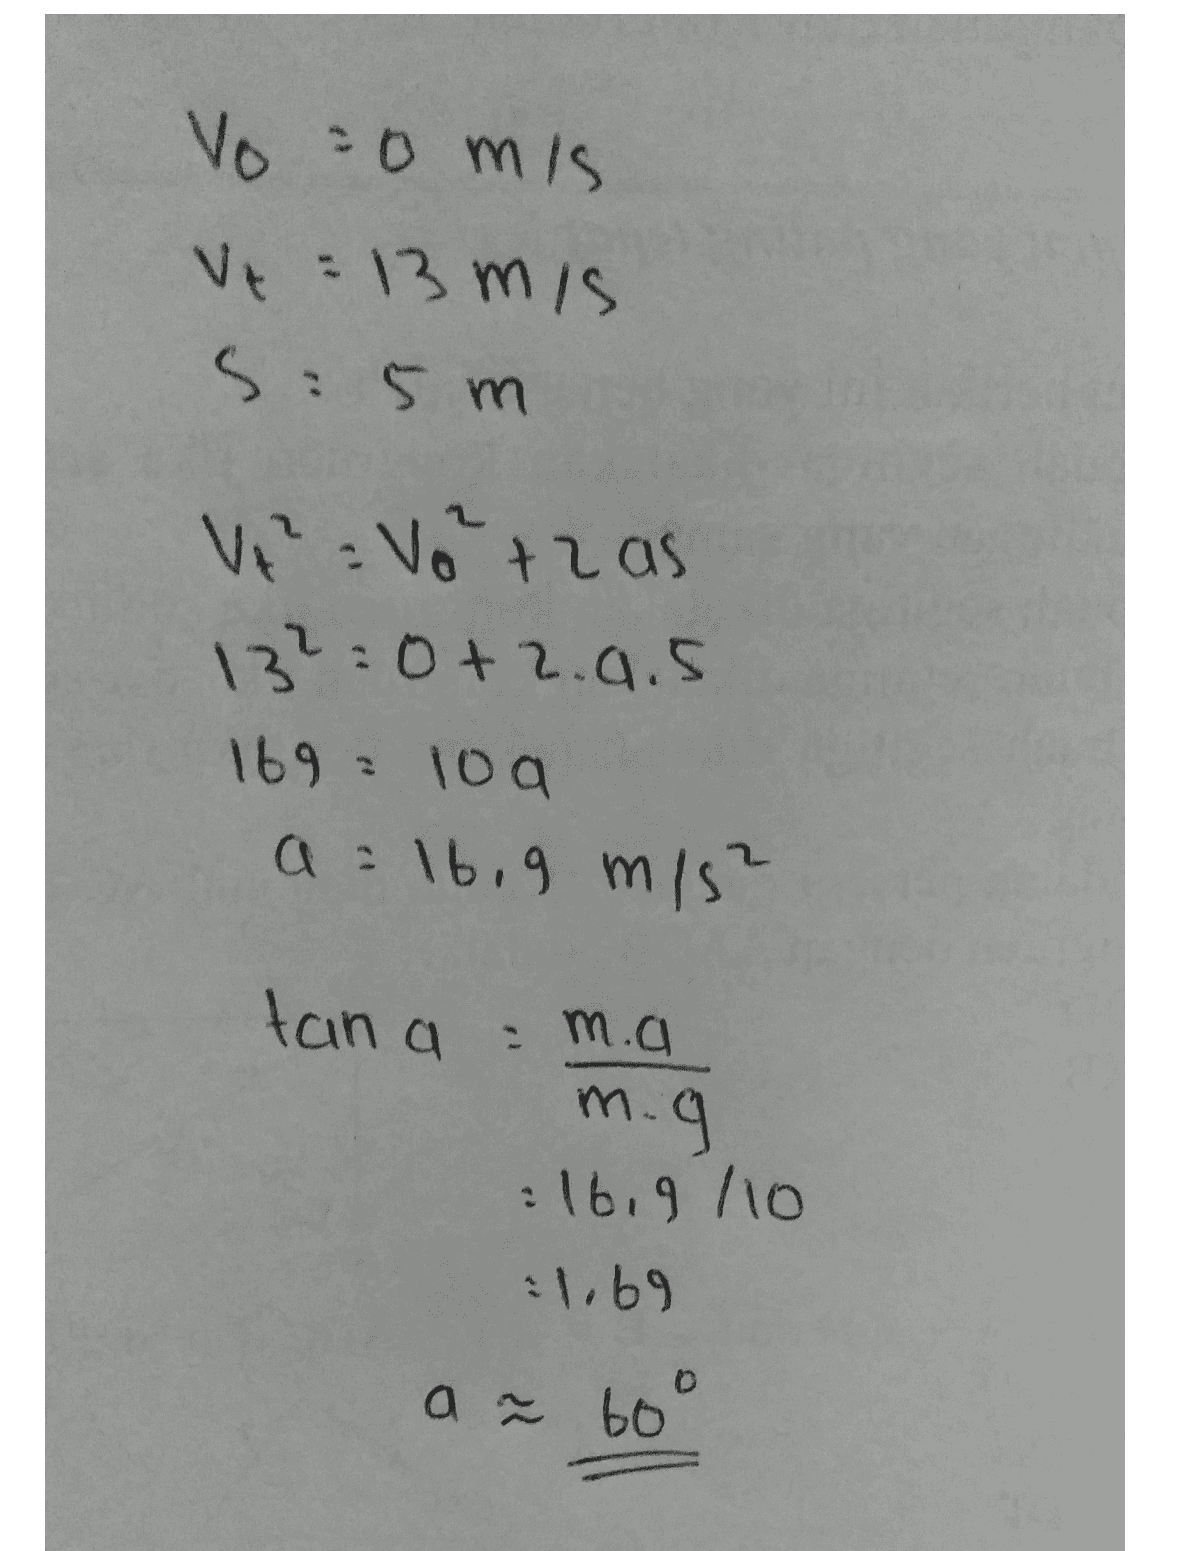 Vo omis Vt : 13 mis 5:5m V = Votz as 13² 0+2.0.5 169 = 10a a = 16, 9 m/s² tana = m.a m.g : 16.9/10 1.69 O a ? 60° 